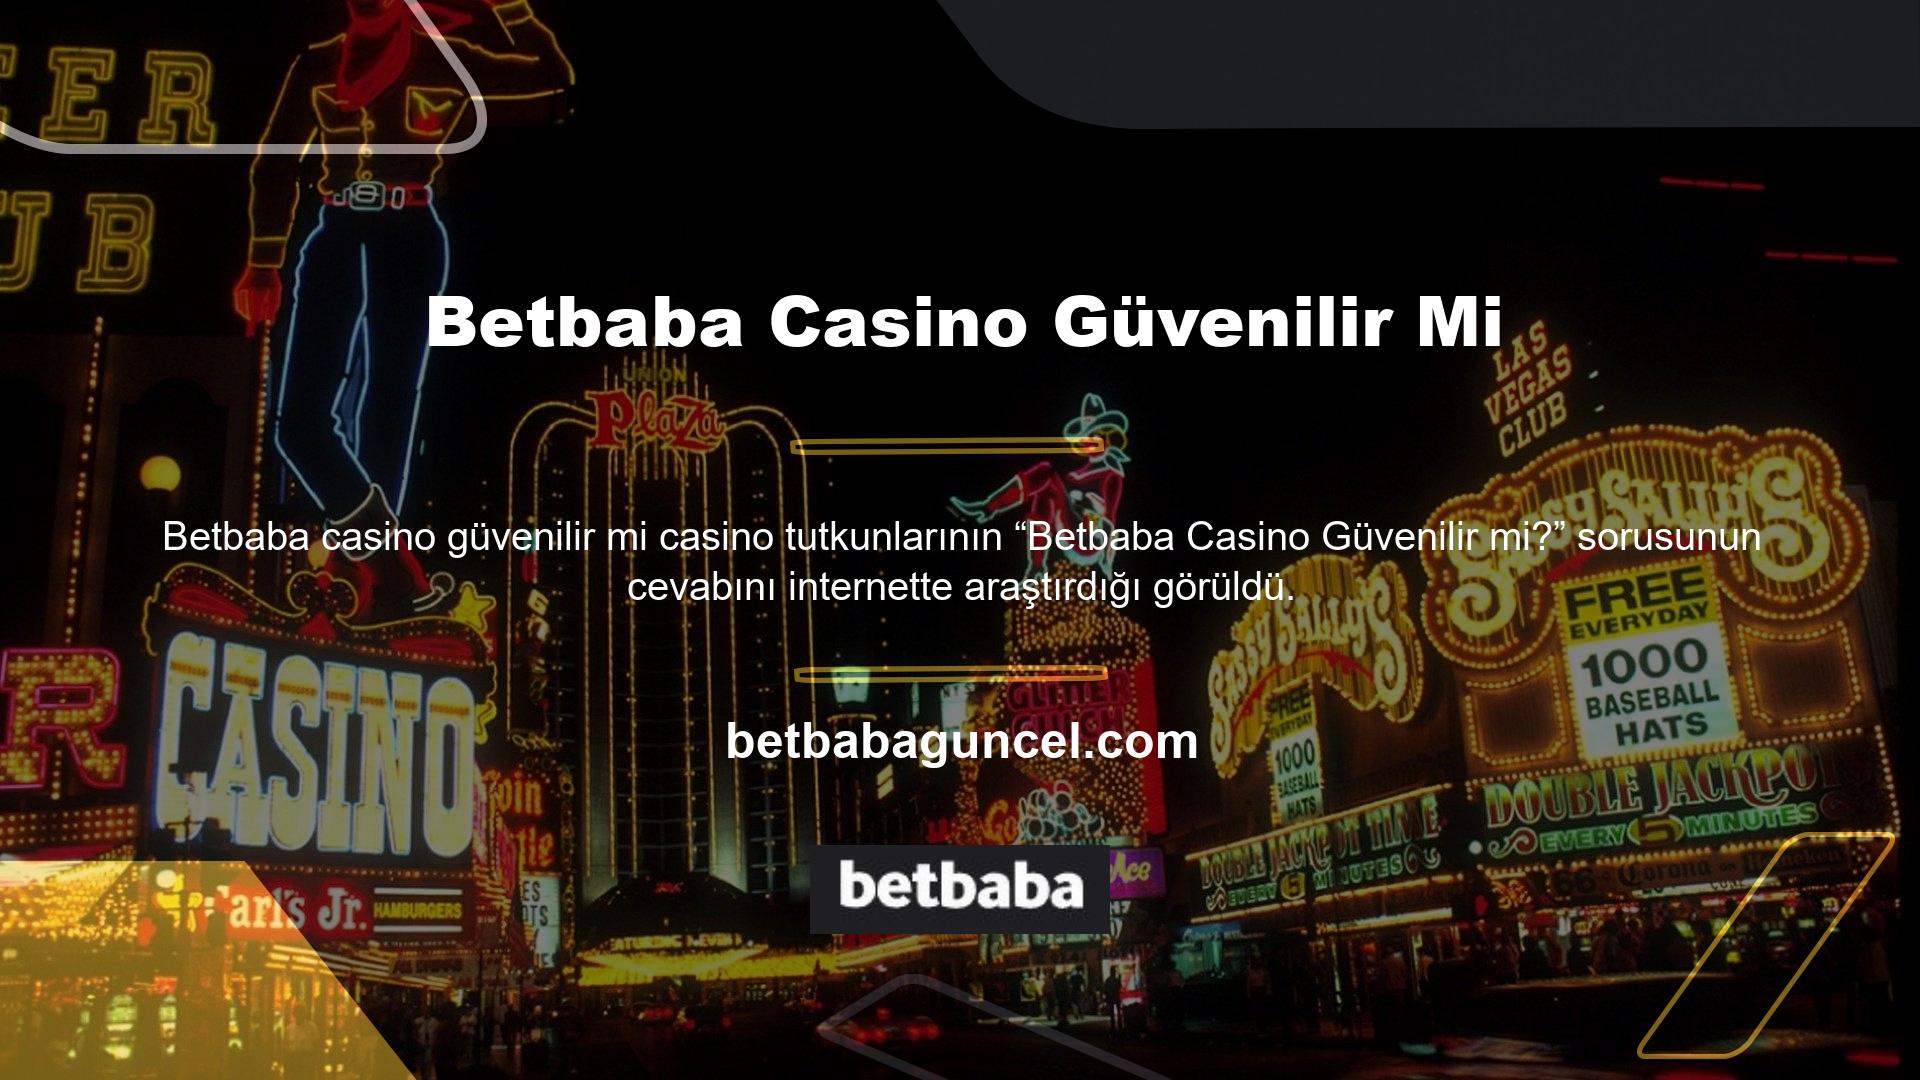 Betbaba online bahis sitesi bir süredir Türkiye'de bahis hizmetleri sunmakta olup eğlenceli ve cömert kazançlar sunmaktadır